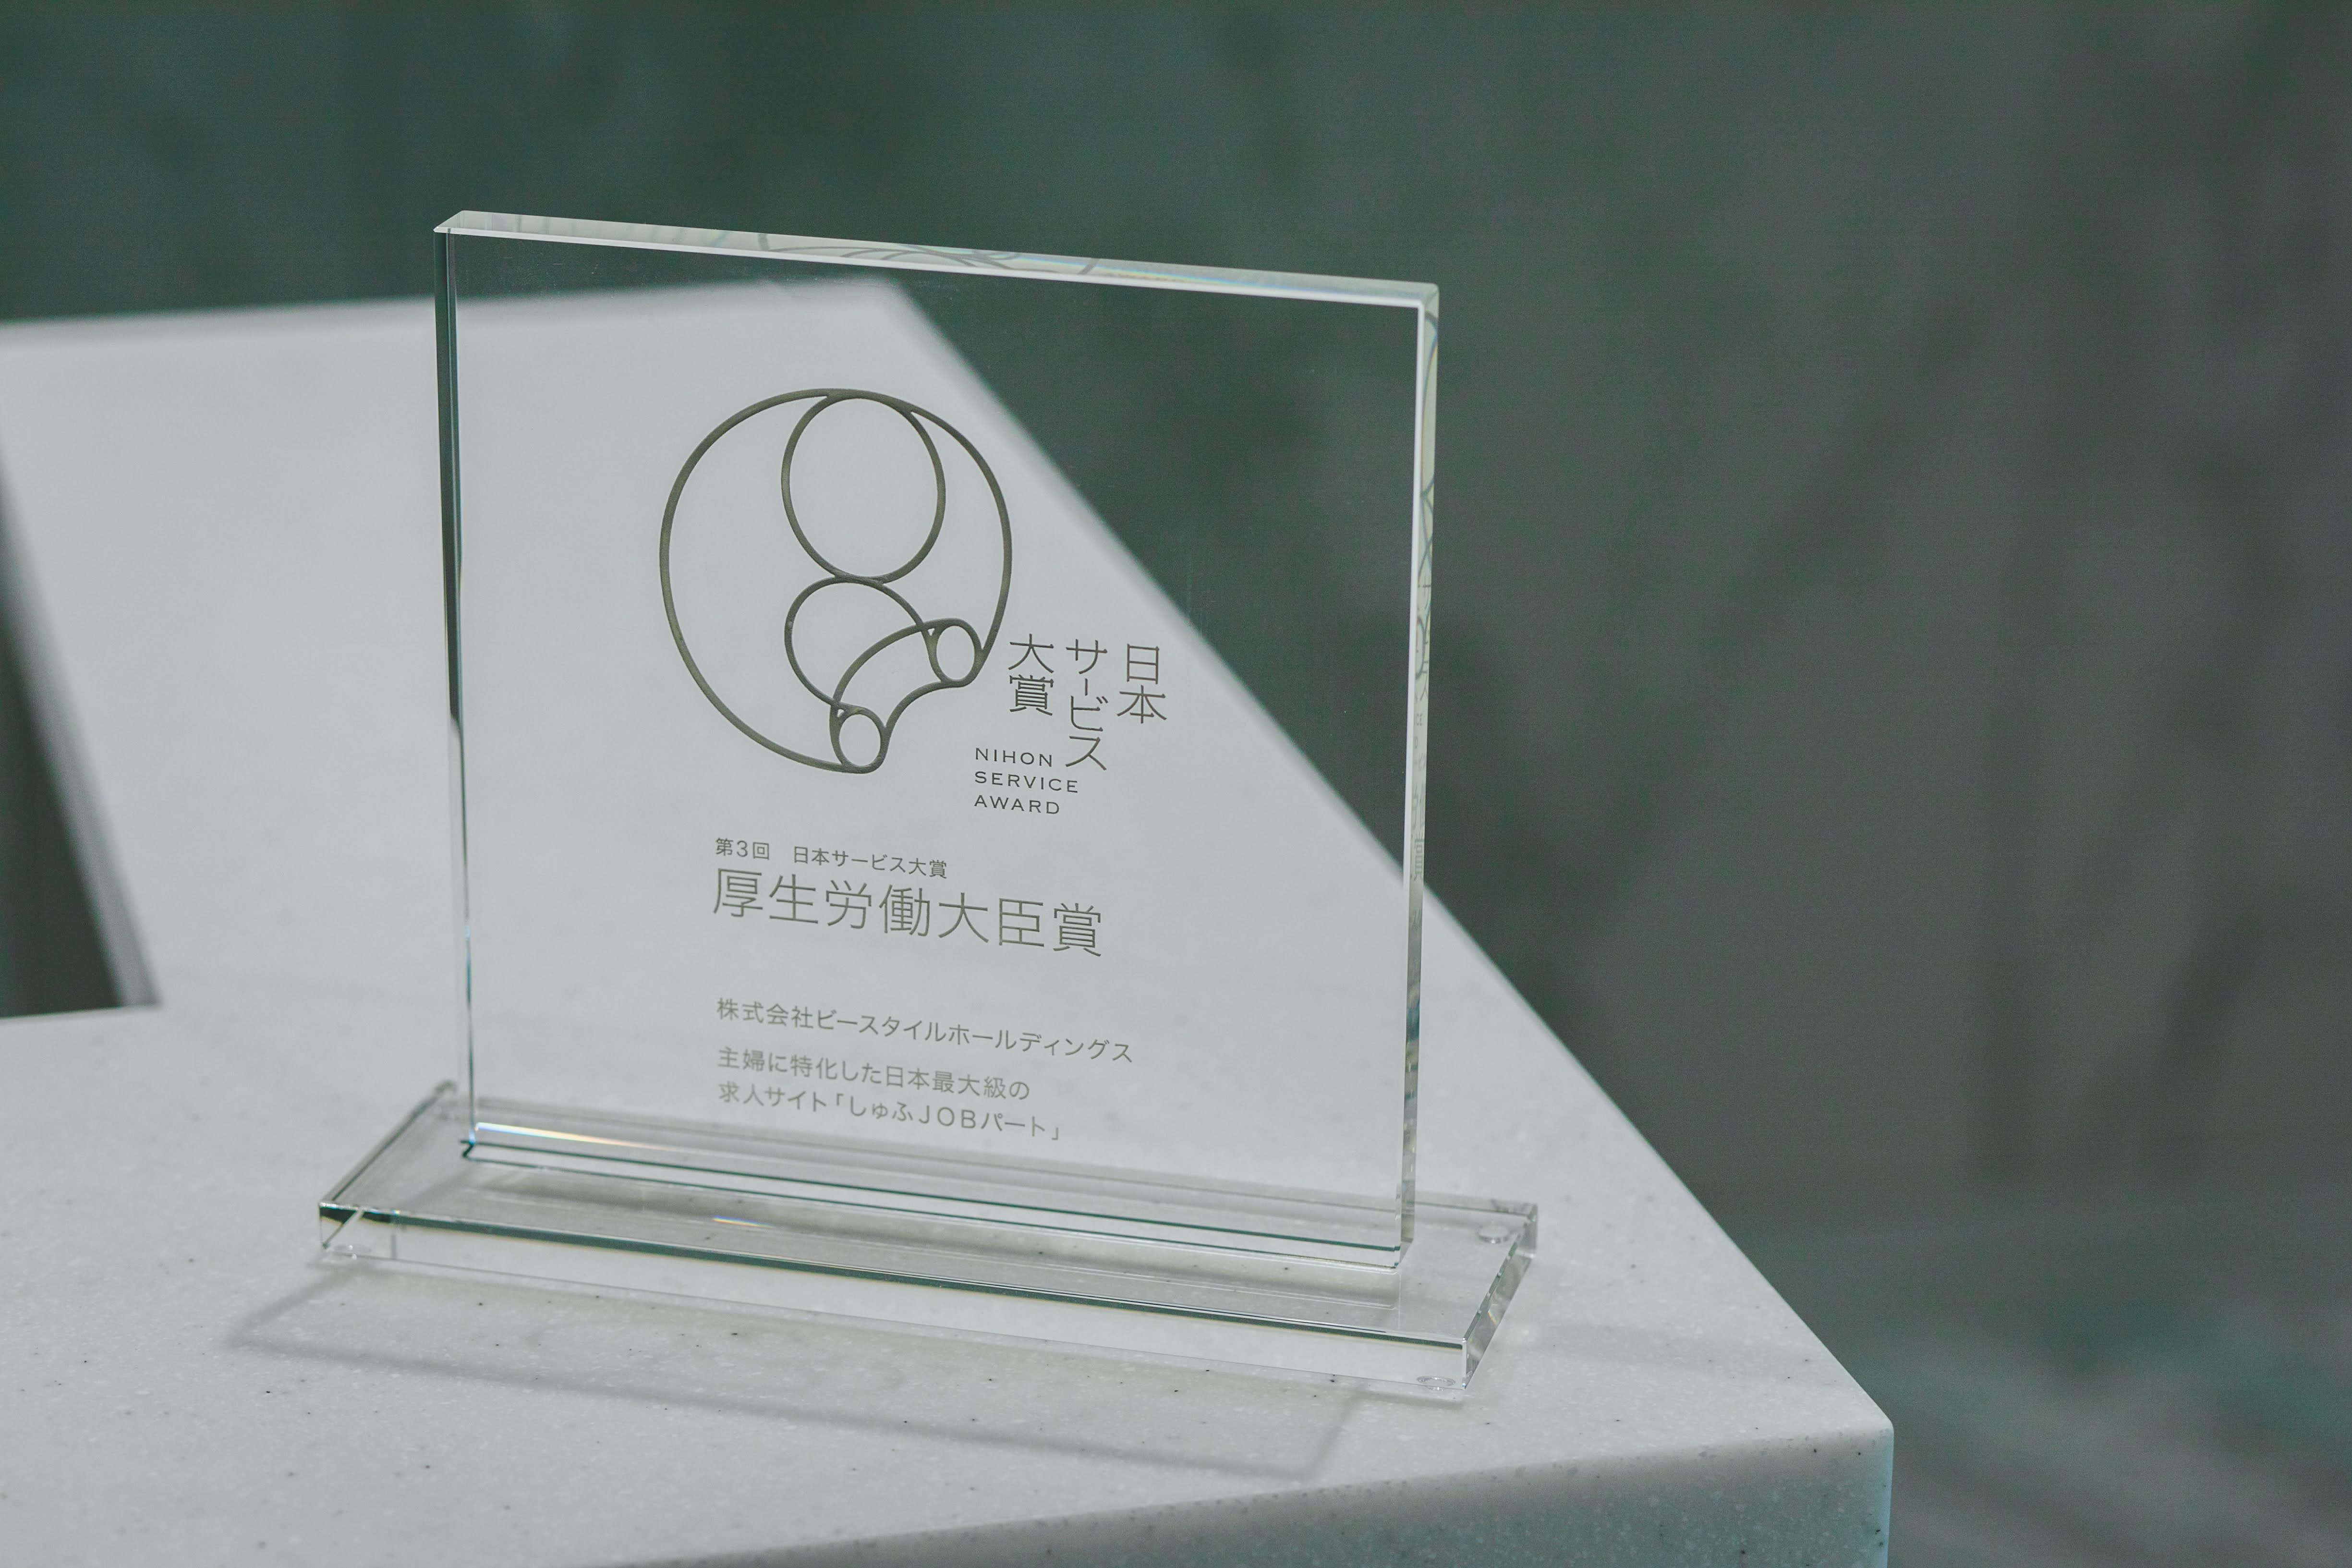 「しゅふＪＯＢパート」が、公益財団法人日本生産性本部 サービス産業生産性協議会主催
第3回 日本サービス大賞 厚生労働大臣賞を受賞しました。